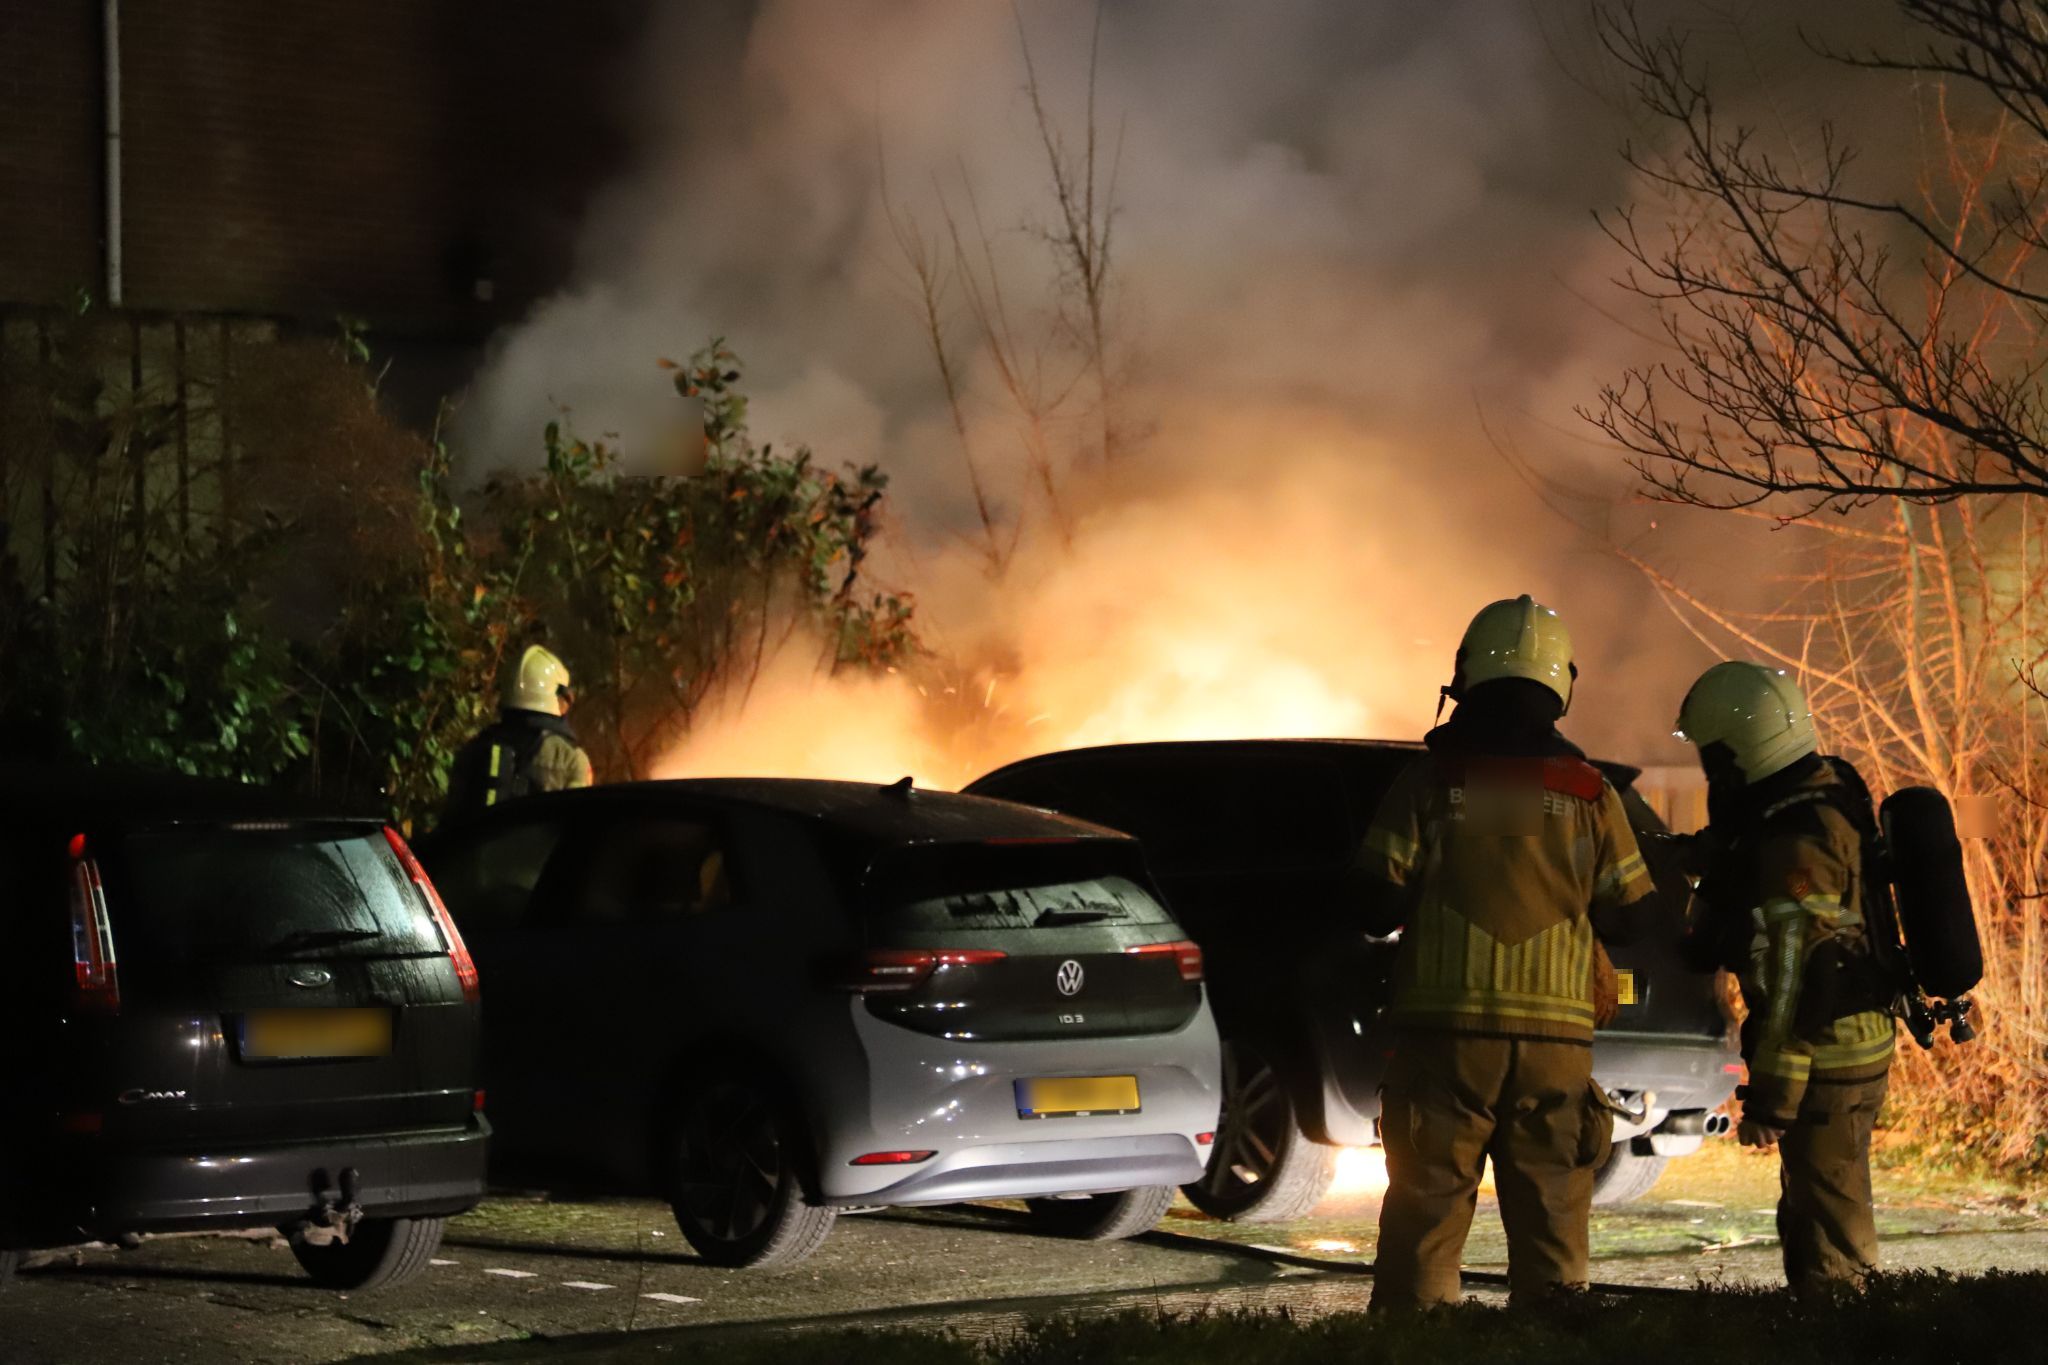 Autobrand blijkt opzettelijke brandstichting: Politie dringt aan op medewerking buurtbewoners